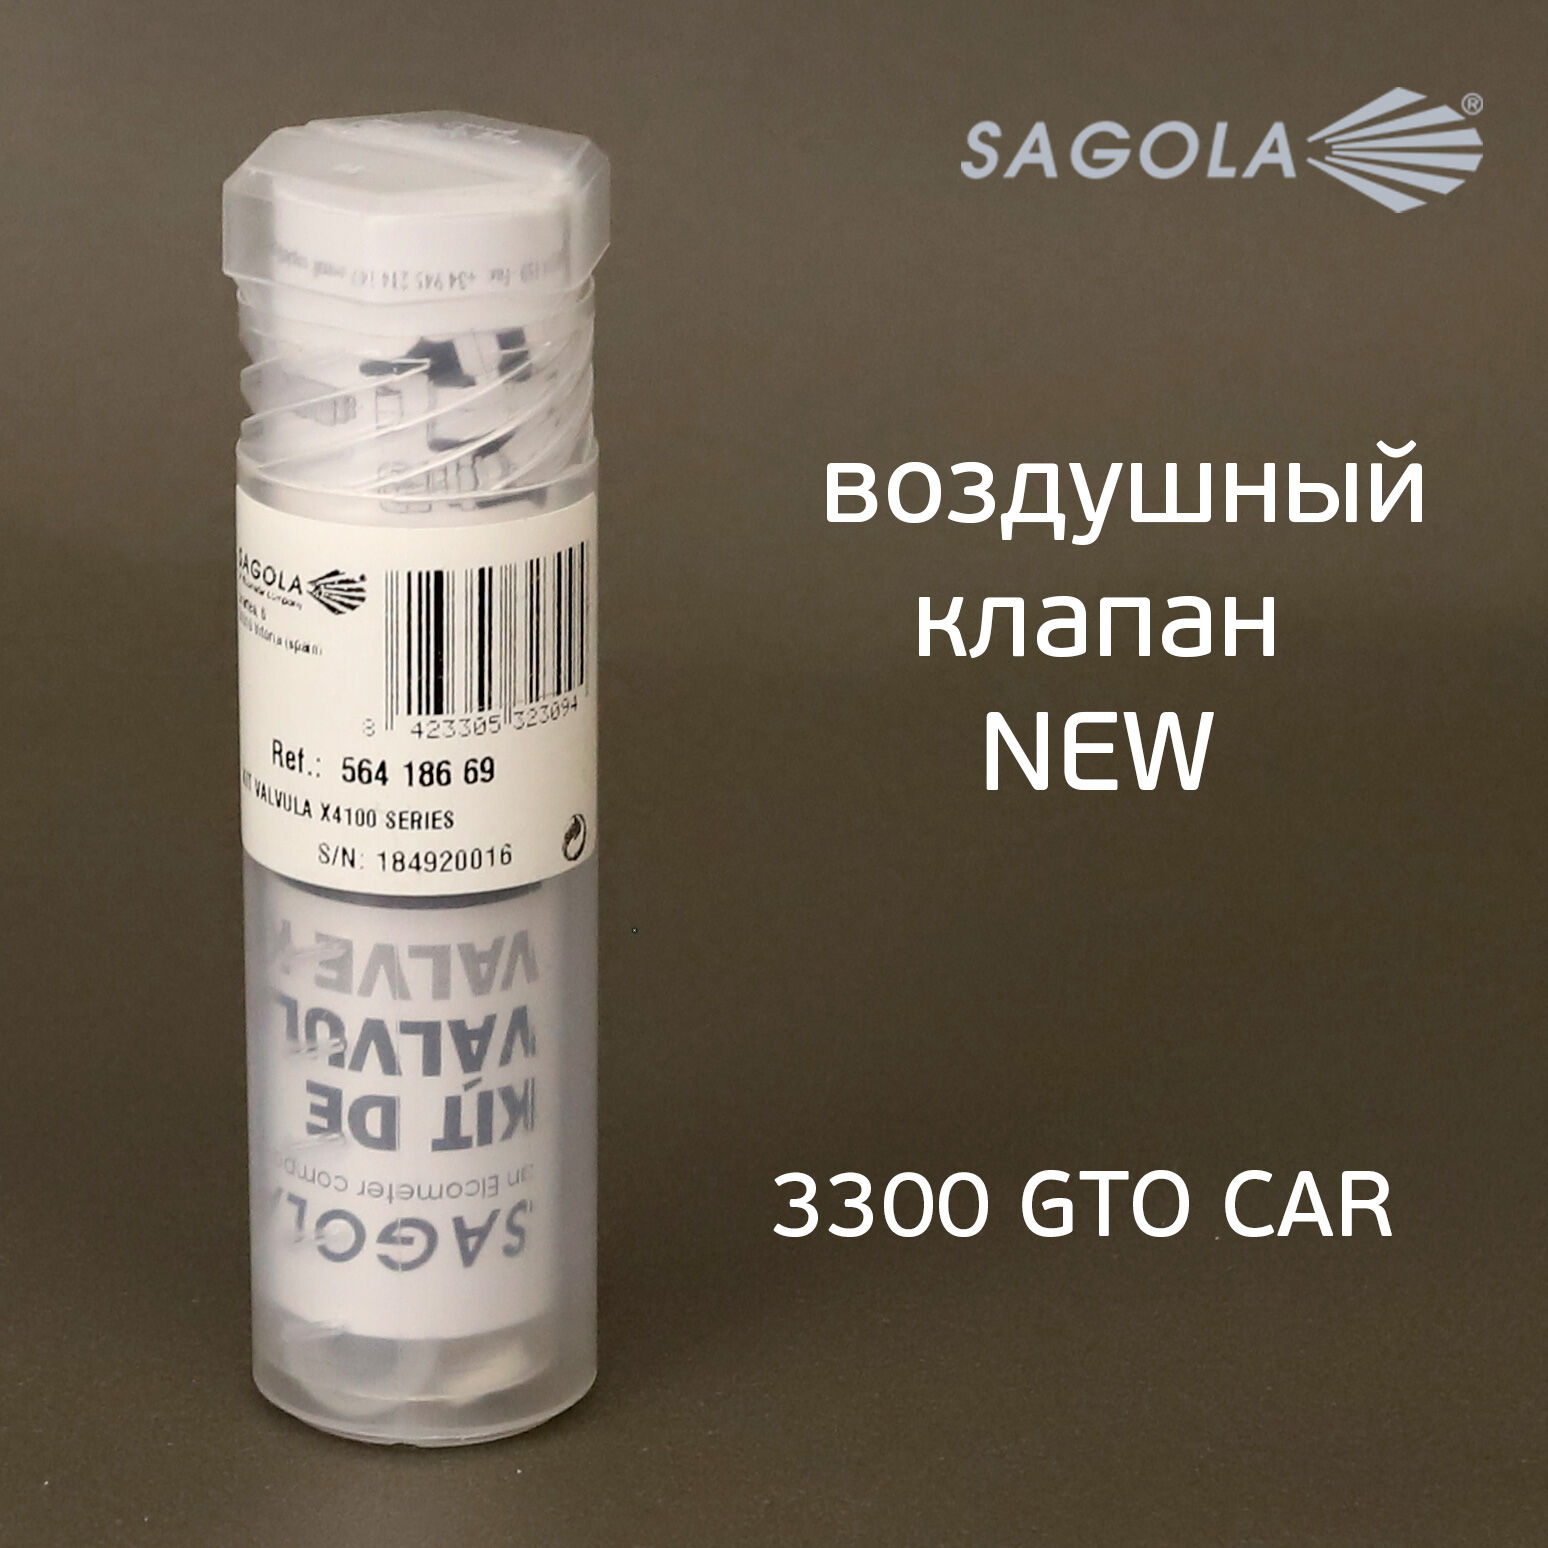 Воздушный клапан Sagola 3300 (обновленный) NEW для краскопульта 3